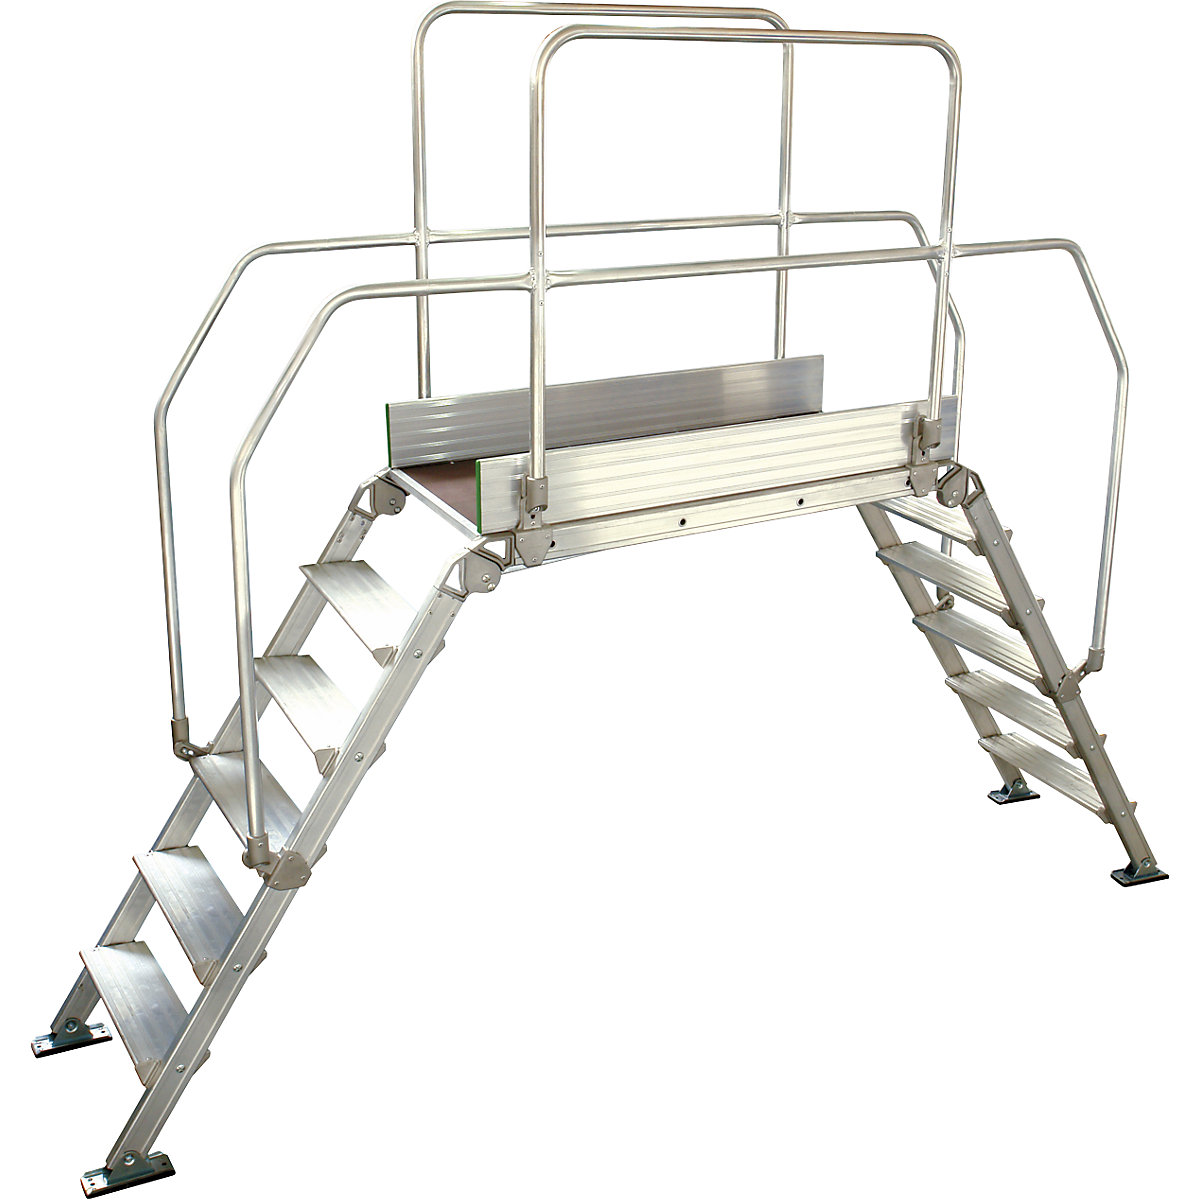 Aluminium ladderbrug, totale belasting 200 kg, 6 treden, platform 1200 x 530 mm-14